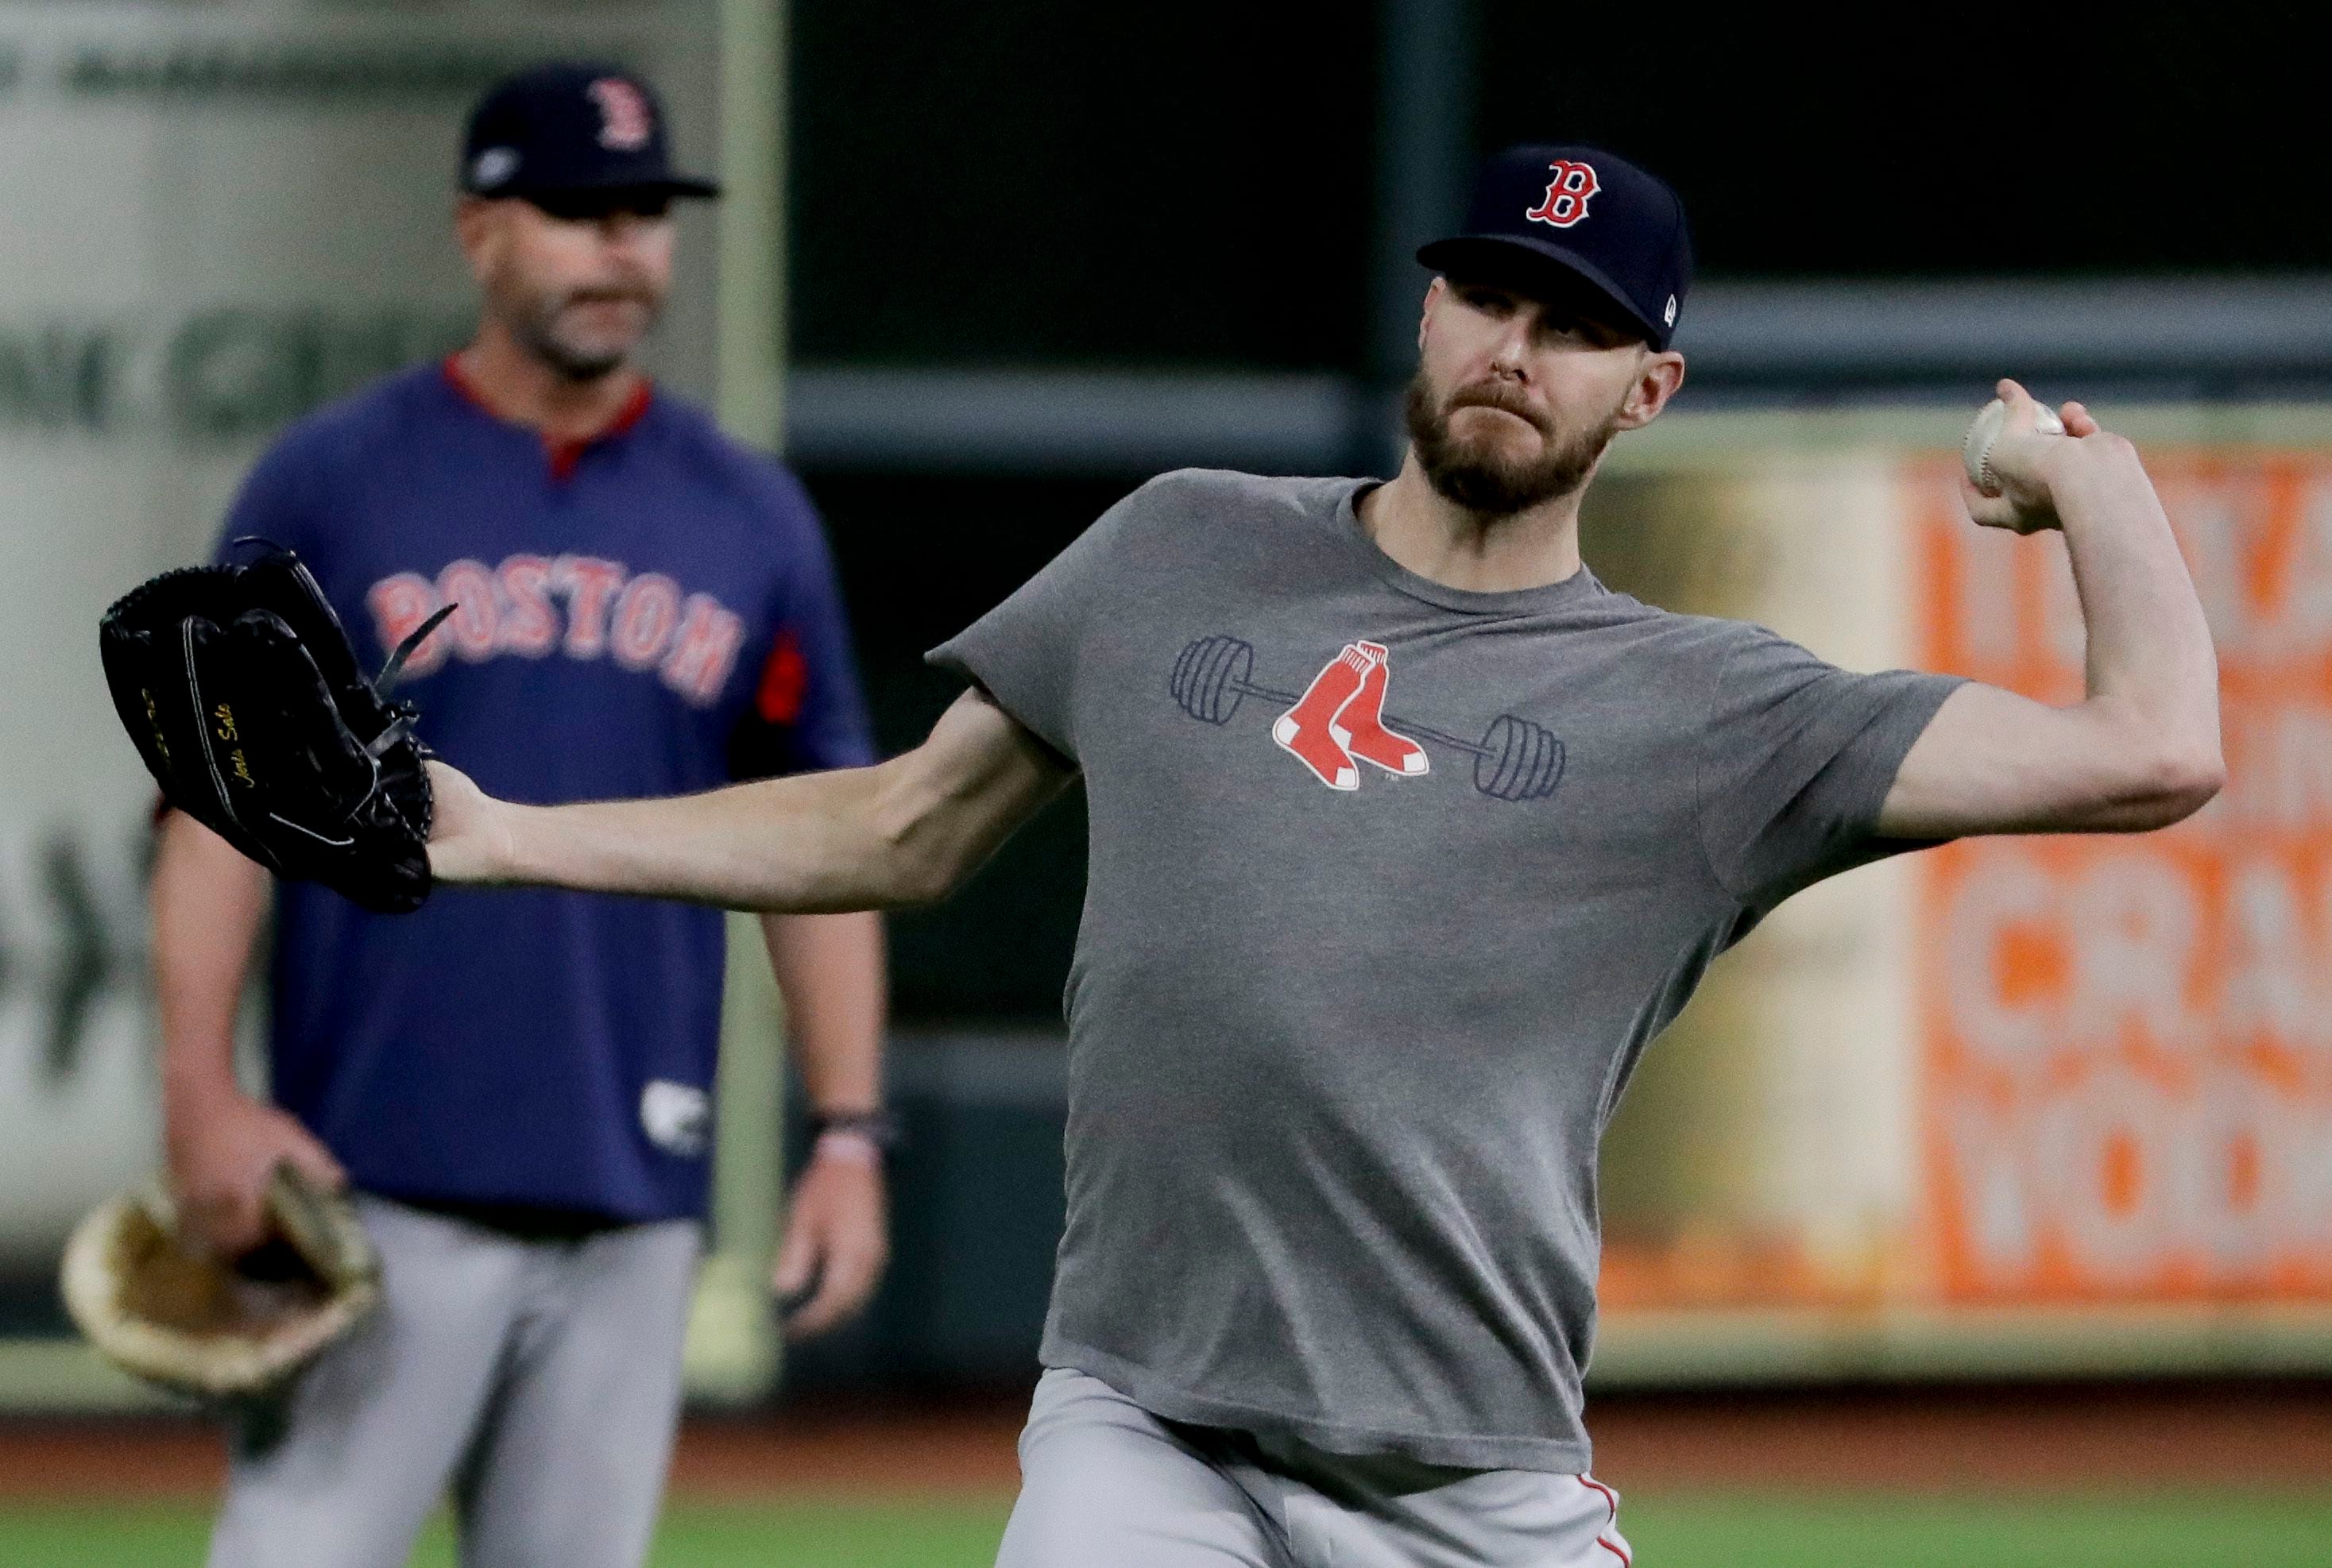 Chris Sale meltdown: Video captures Red Sox starter destroying